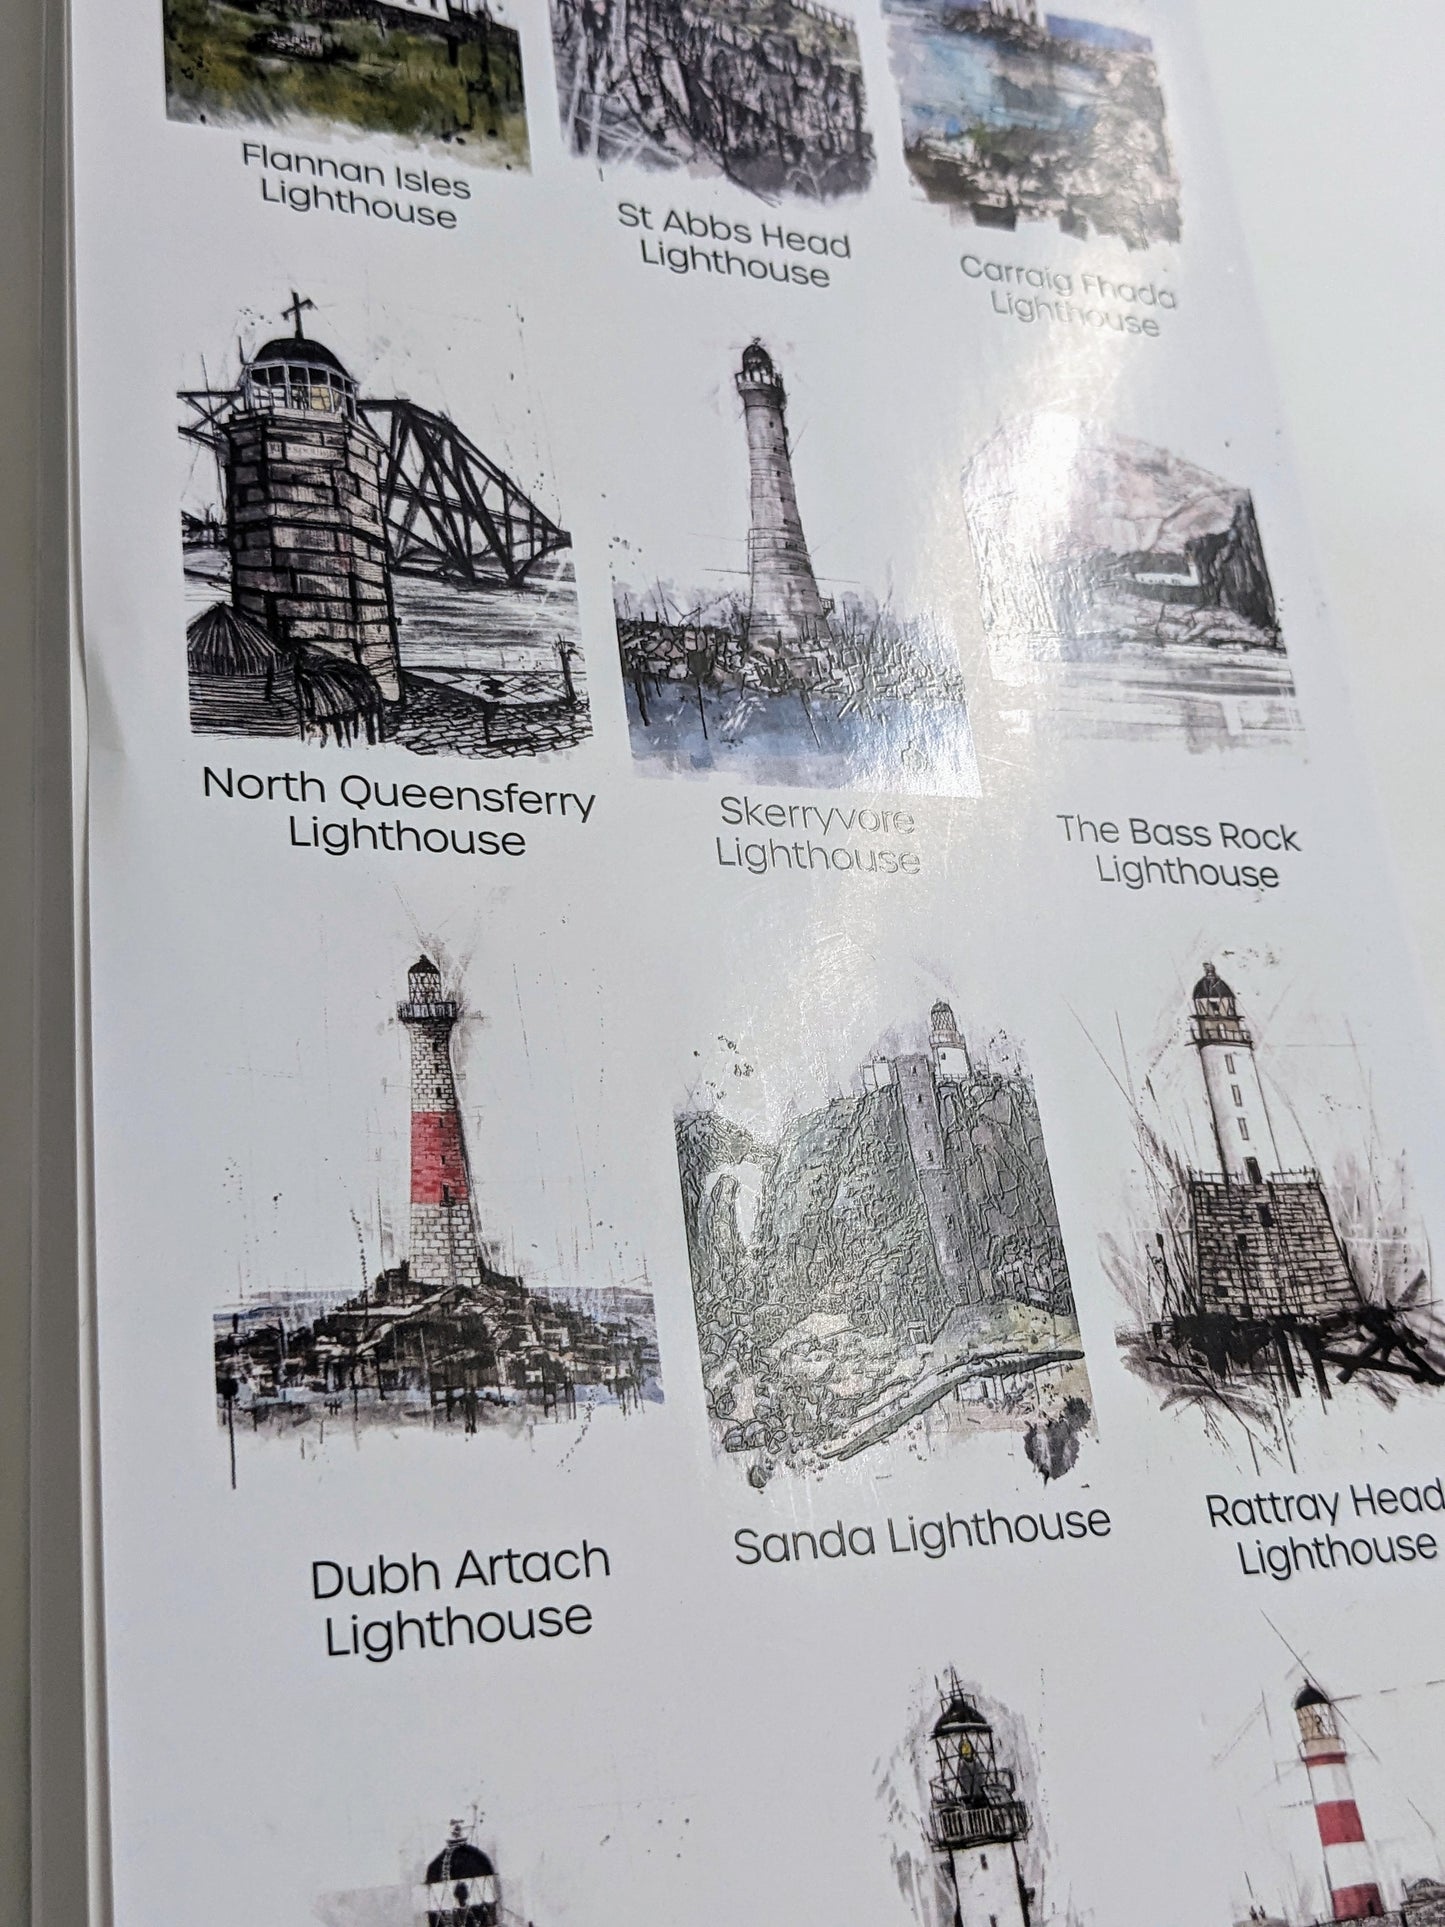 Lighthouses of Scotland Calendar 2025